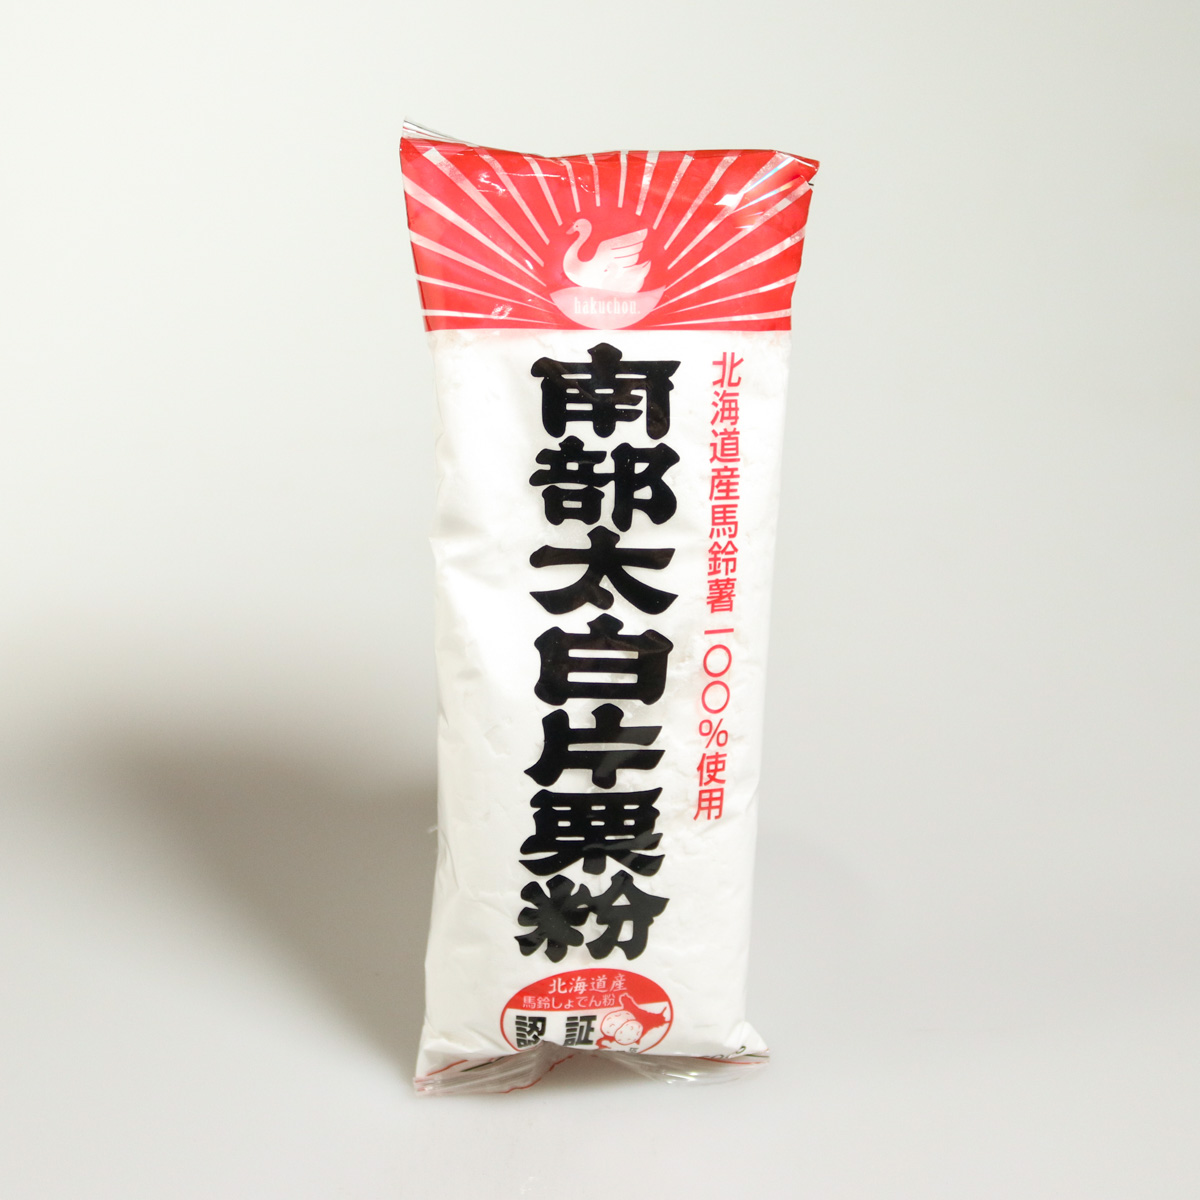 fécule de pomme de terre katakuriko pour poulet frit kara-age